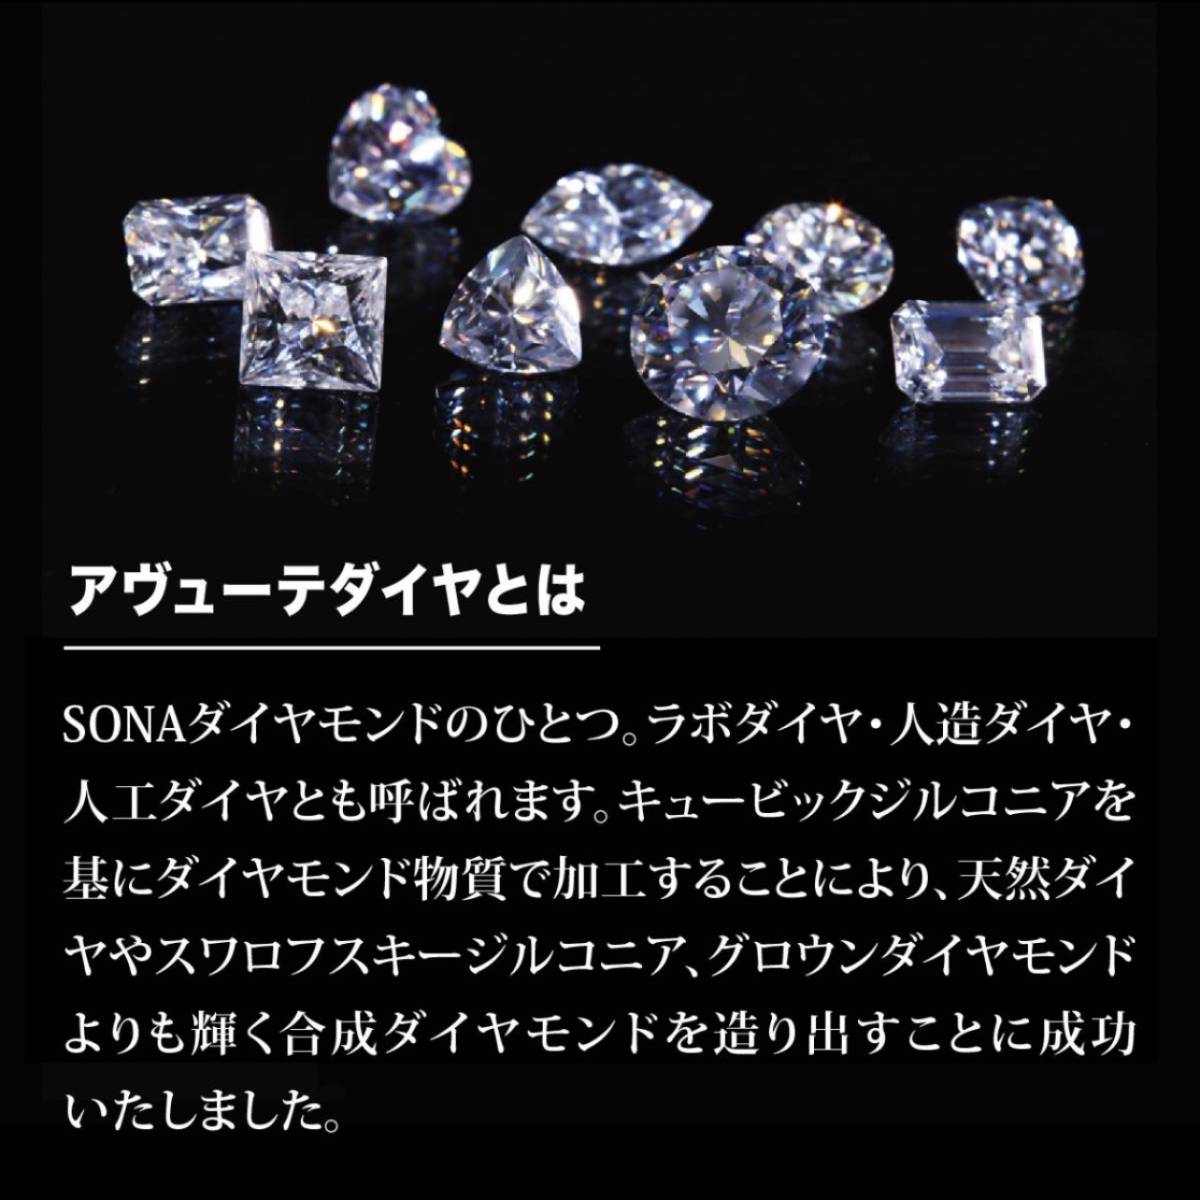  новый товар * блеск гарантия дизайн обруч серьги SONA бриллиант Gold * ювелирные изделия сумка письменная гарантия мужской женский кольцо подарок 